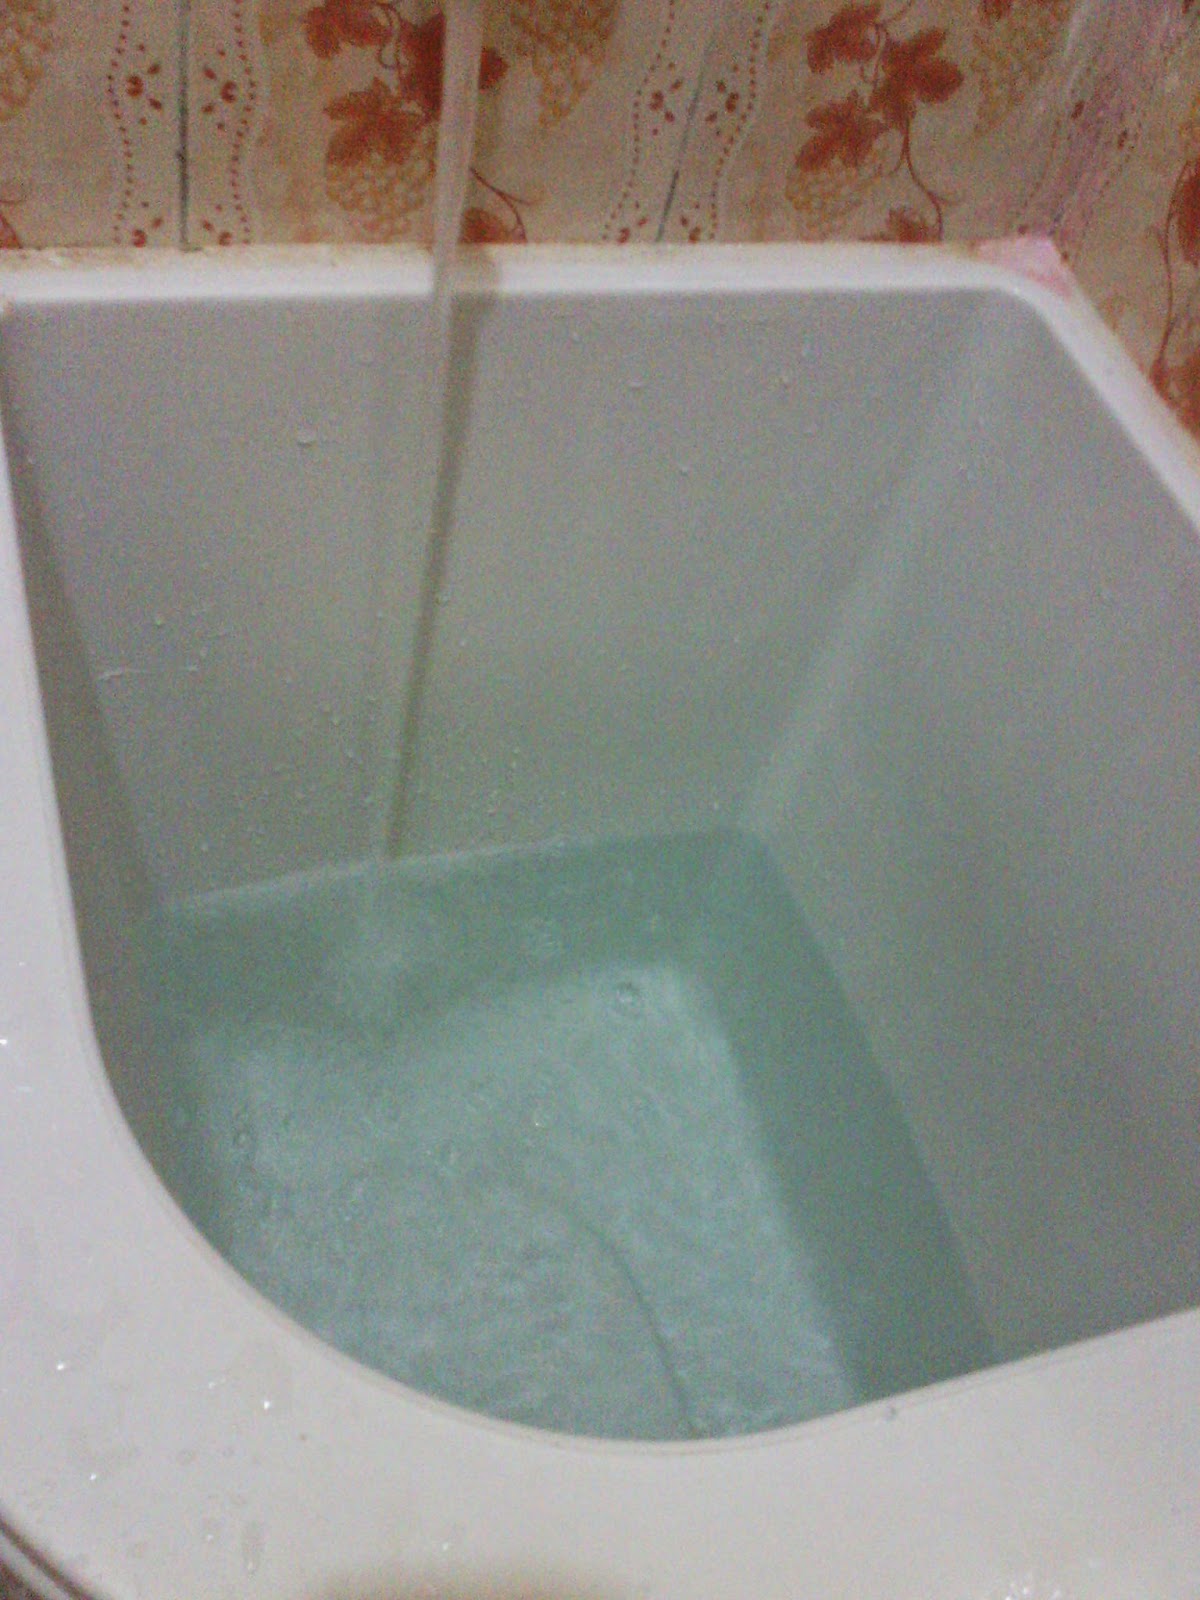 Sidik Blog Tips trik membersihkan bak  mandi  menggunakan 